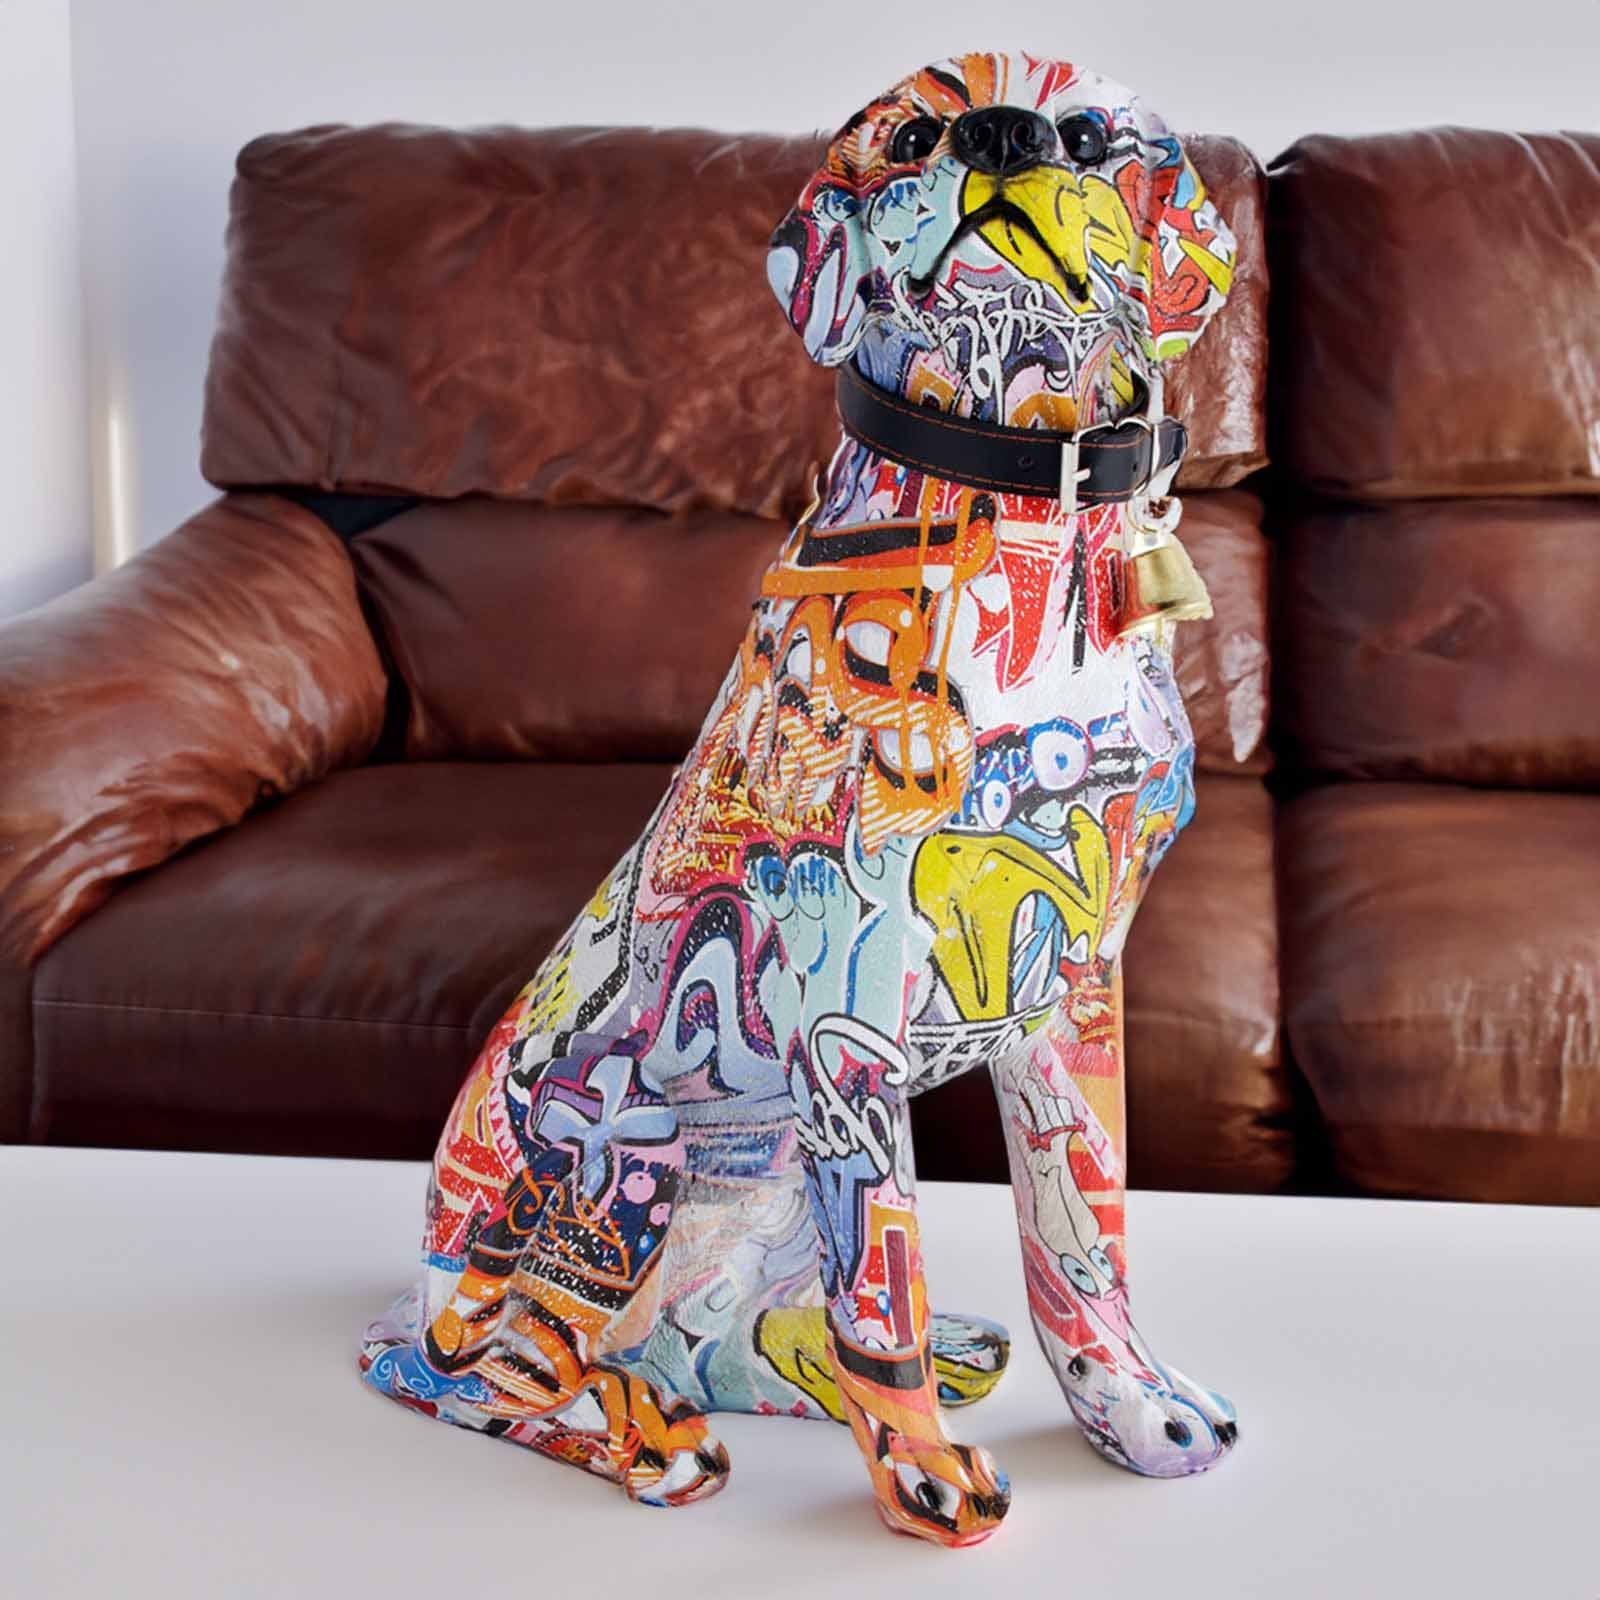 Tierfigur Deko Figuren - Retriever Tiere Figur Monkimau Dekoration Labrador Wohnzimmer (Packung)